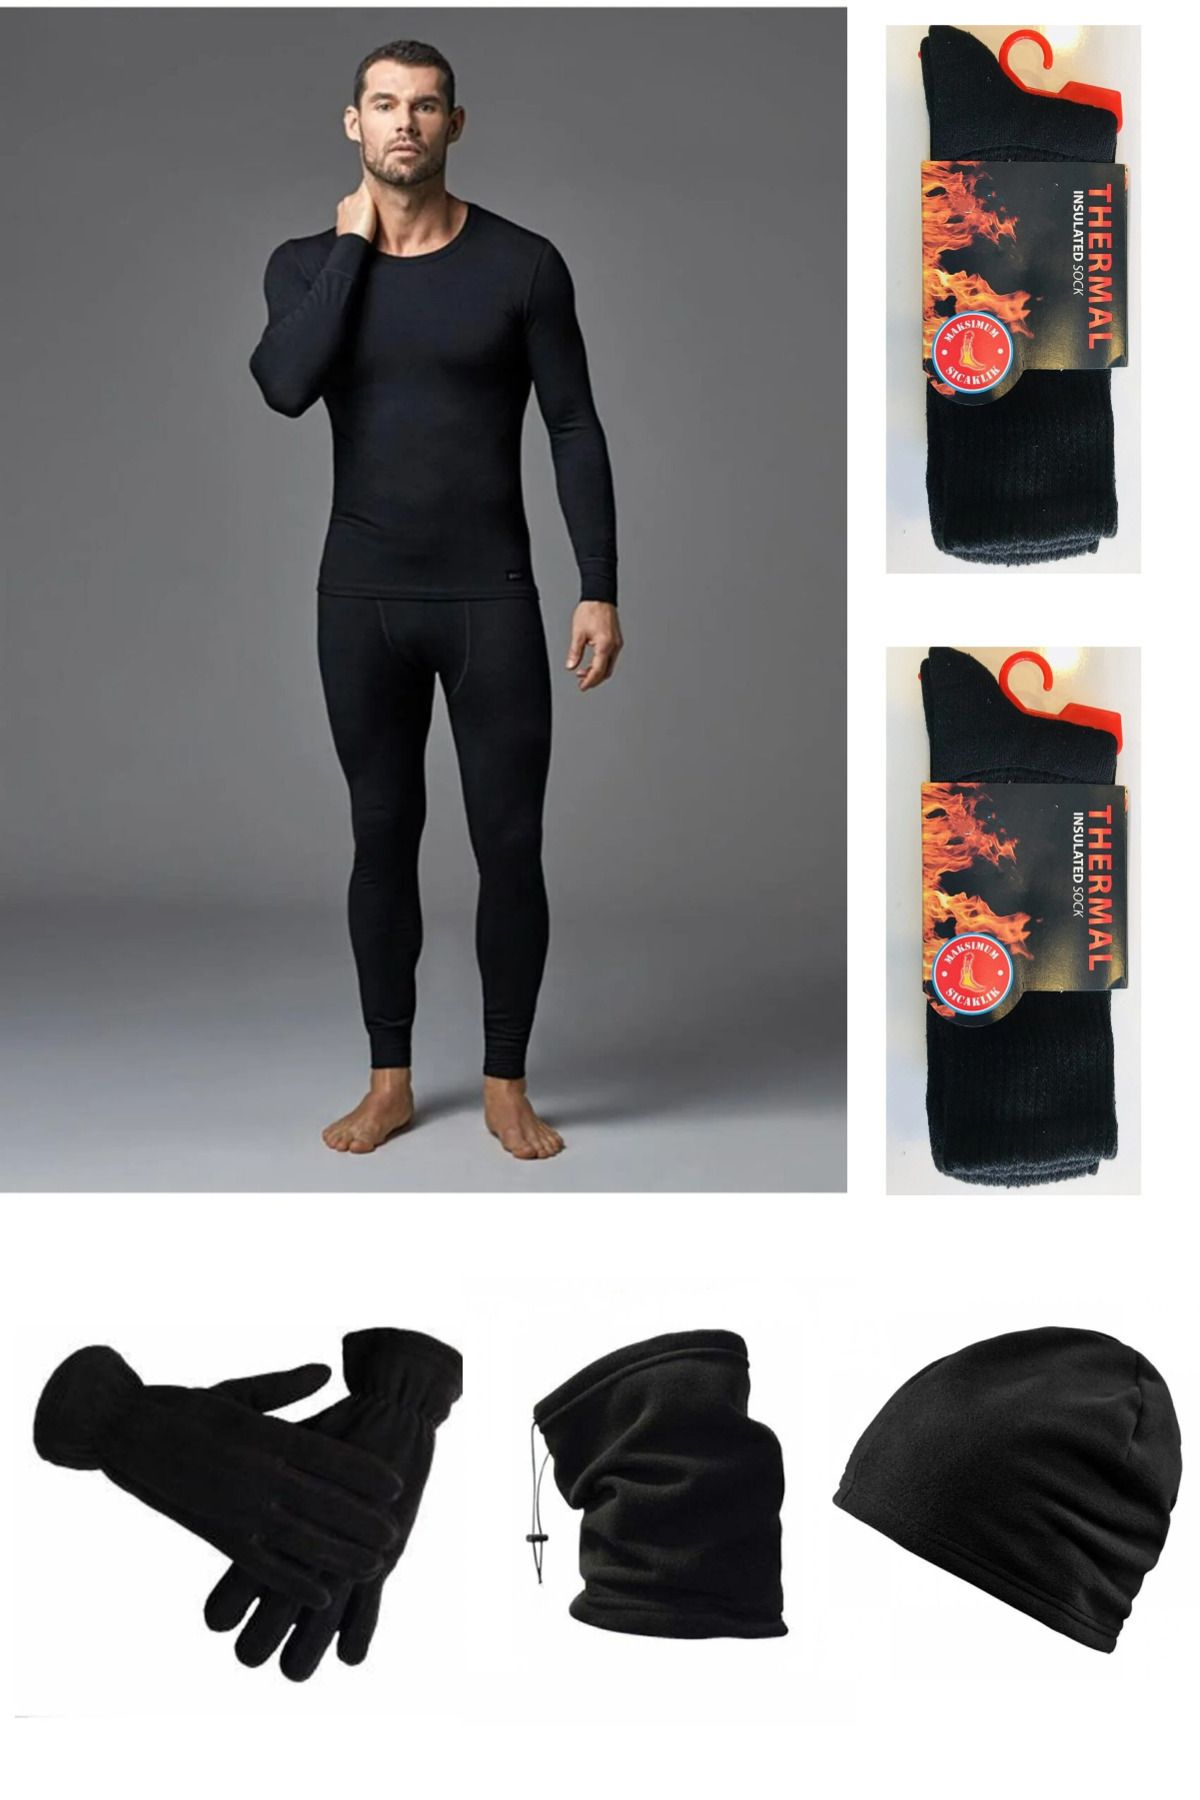 Tutku Erkek Siyah Termal Alt Üst Takım-Polar Şapka-Eldiven-Boyunluk-2 ÇİFT Termal Çorap Set